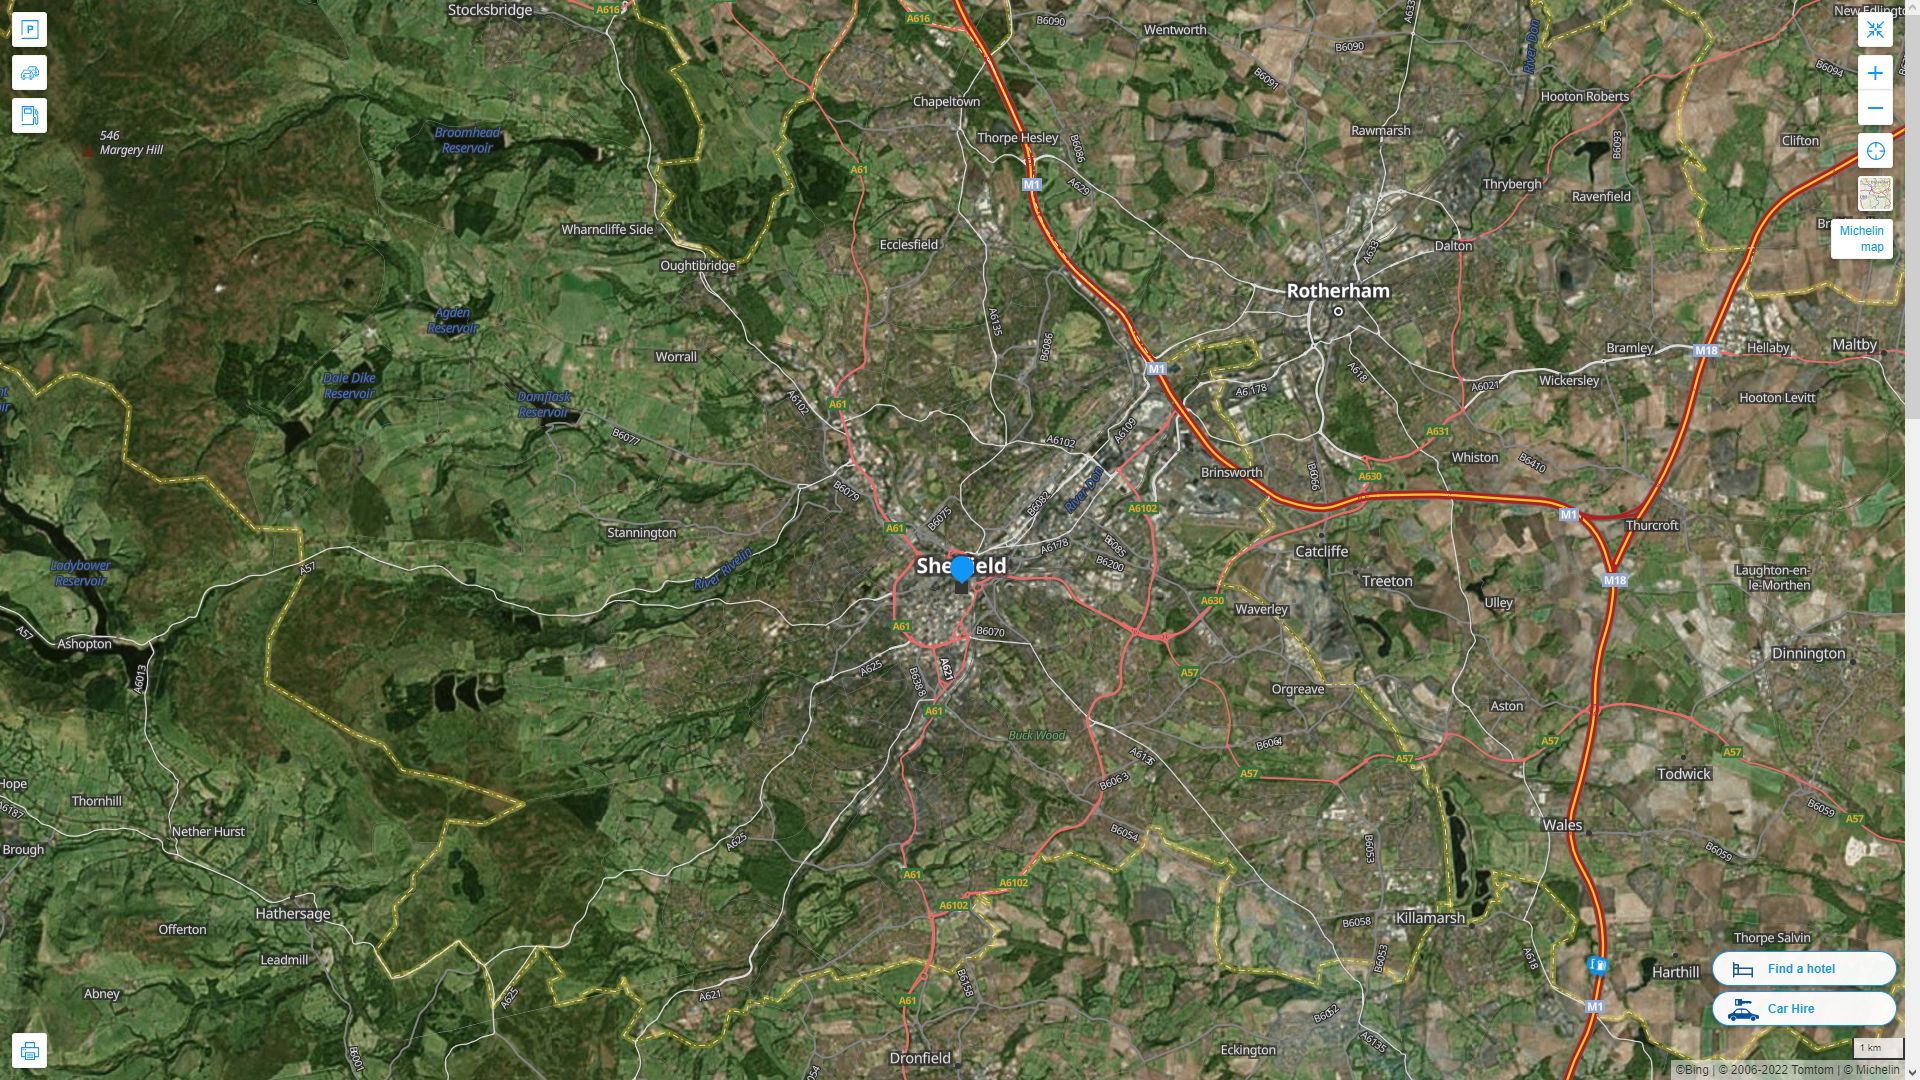 Sheffield Royaume Uni Autoroute et carte routiere avec vue satellite